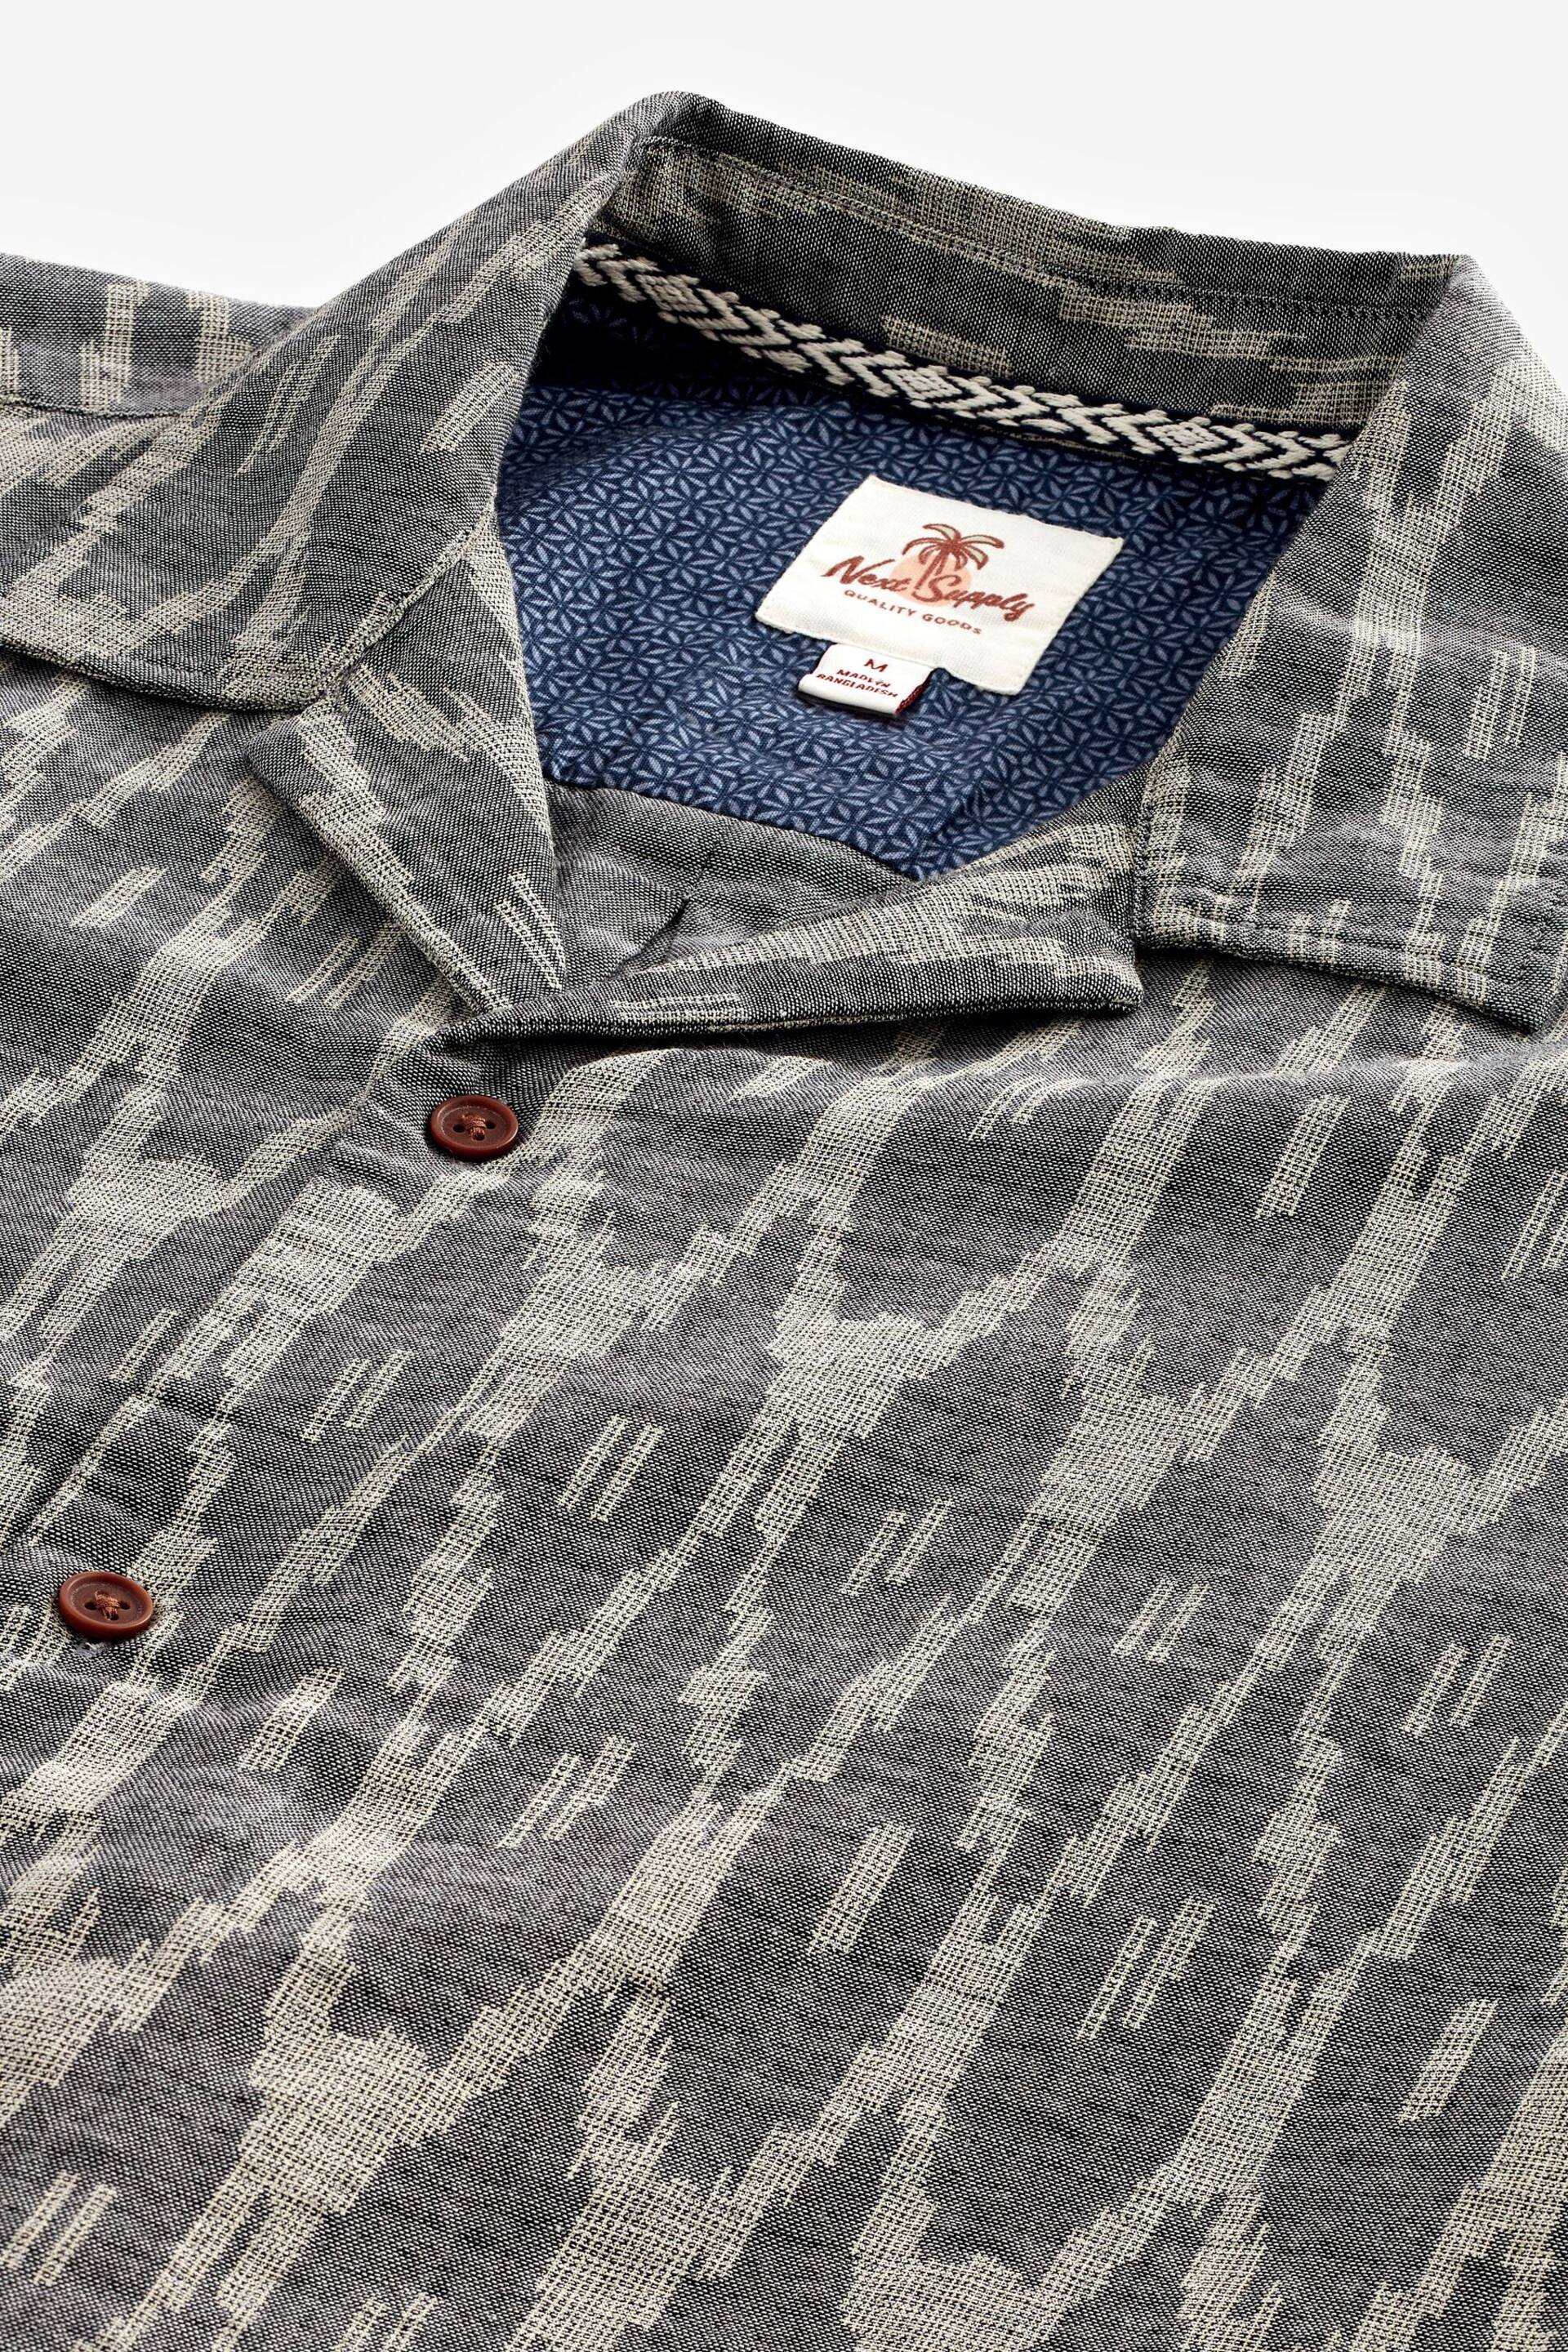 Grey Textured Short Sleeve Shirt With Cuban Collar - Image 6 of 7